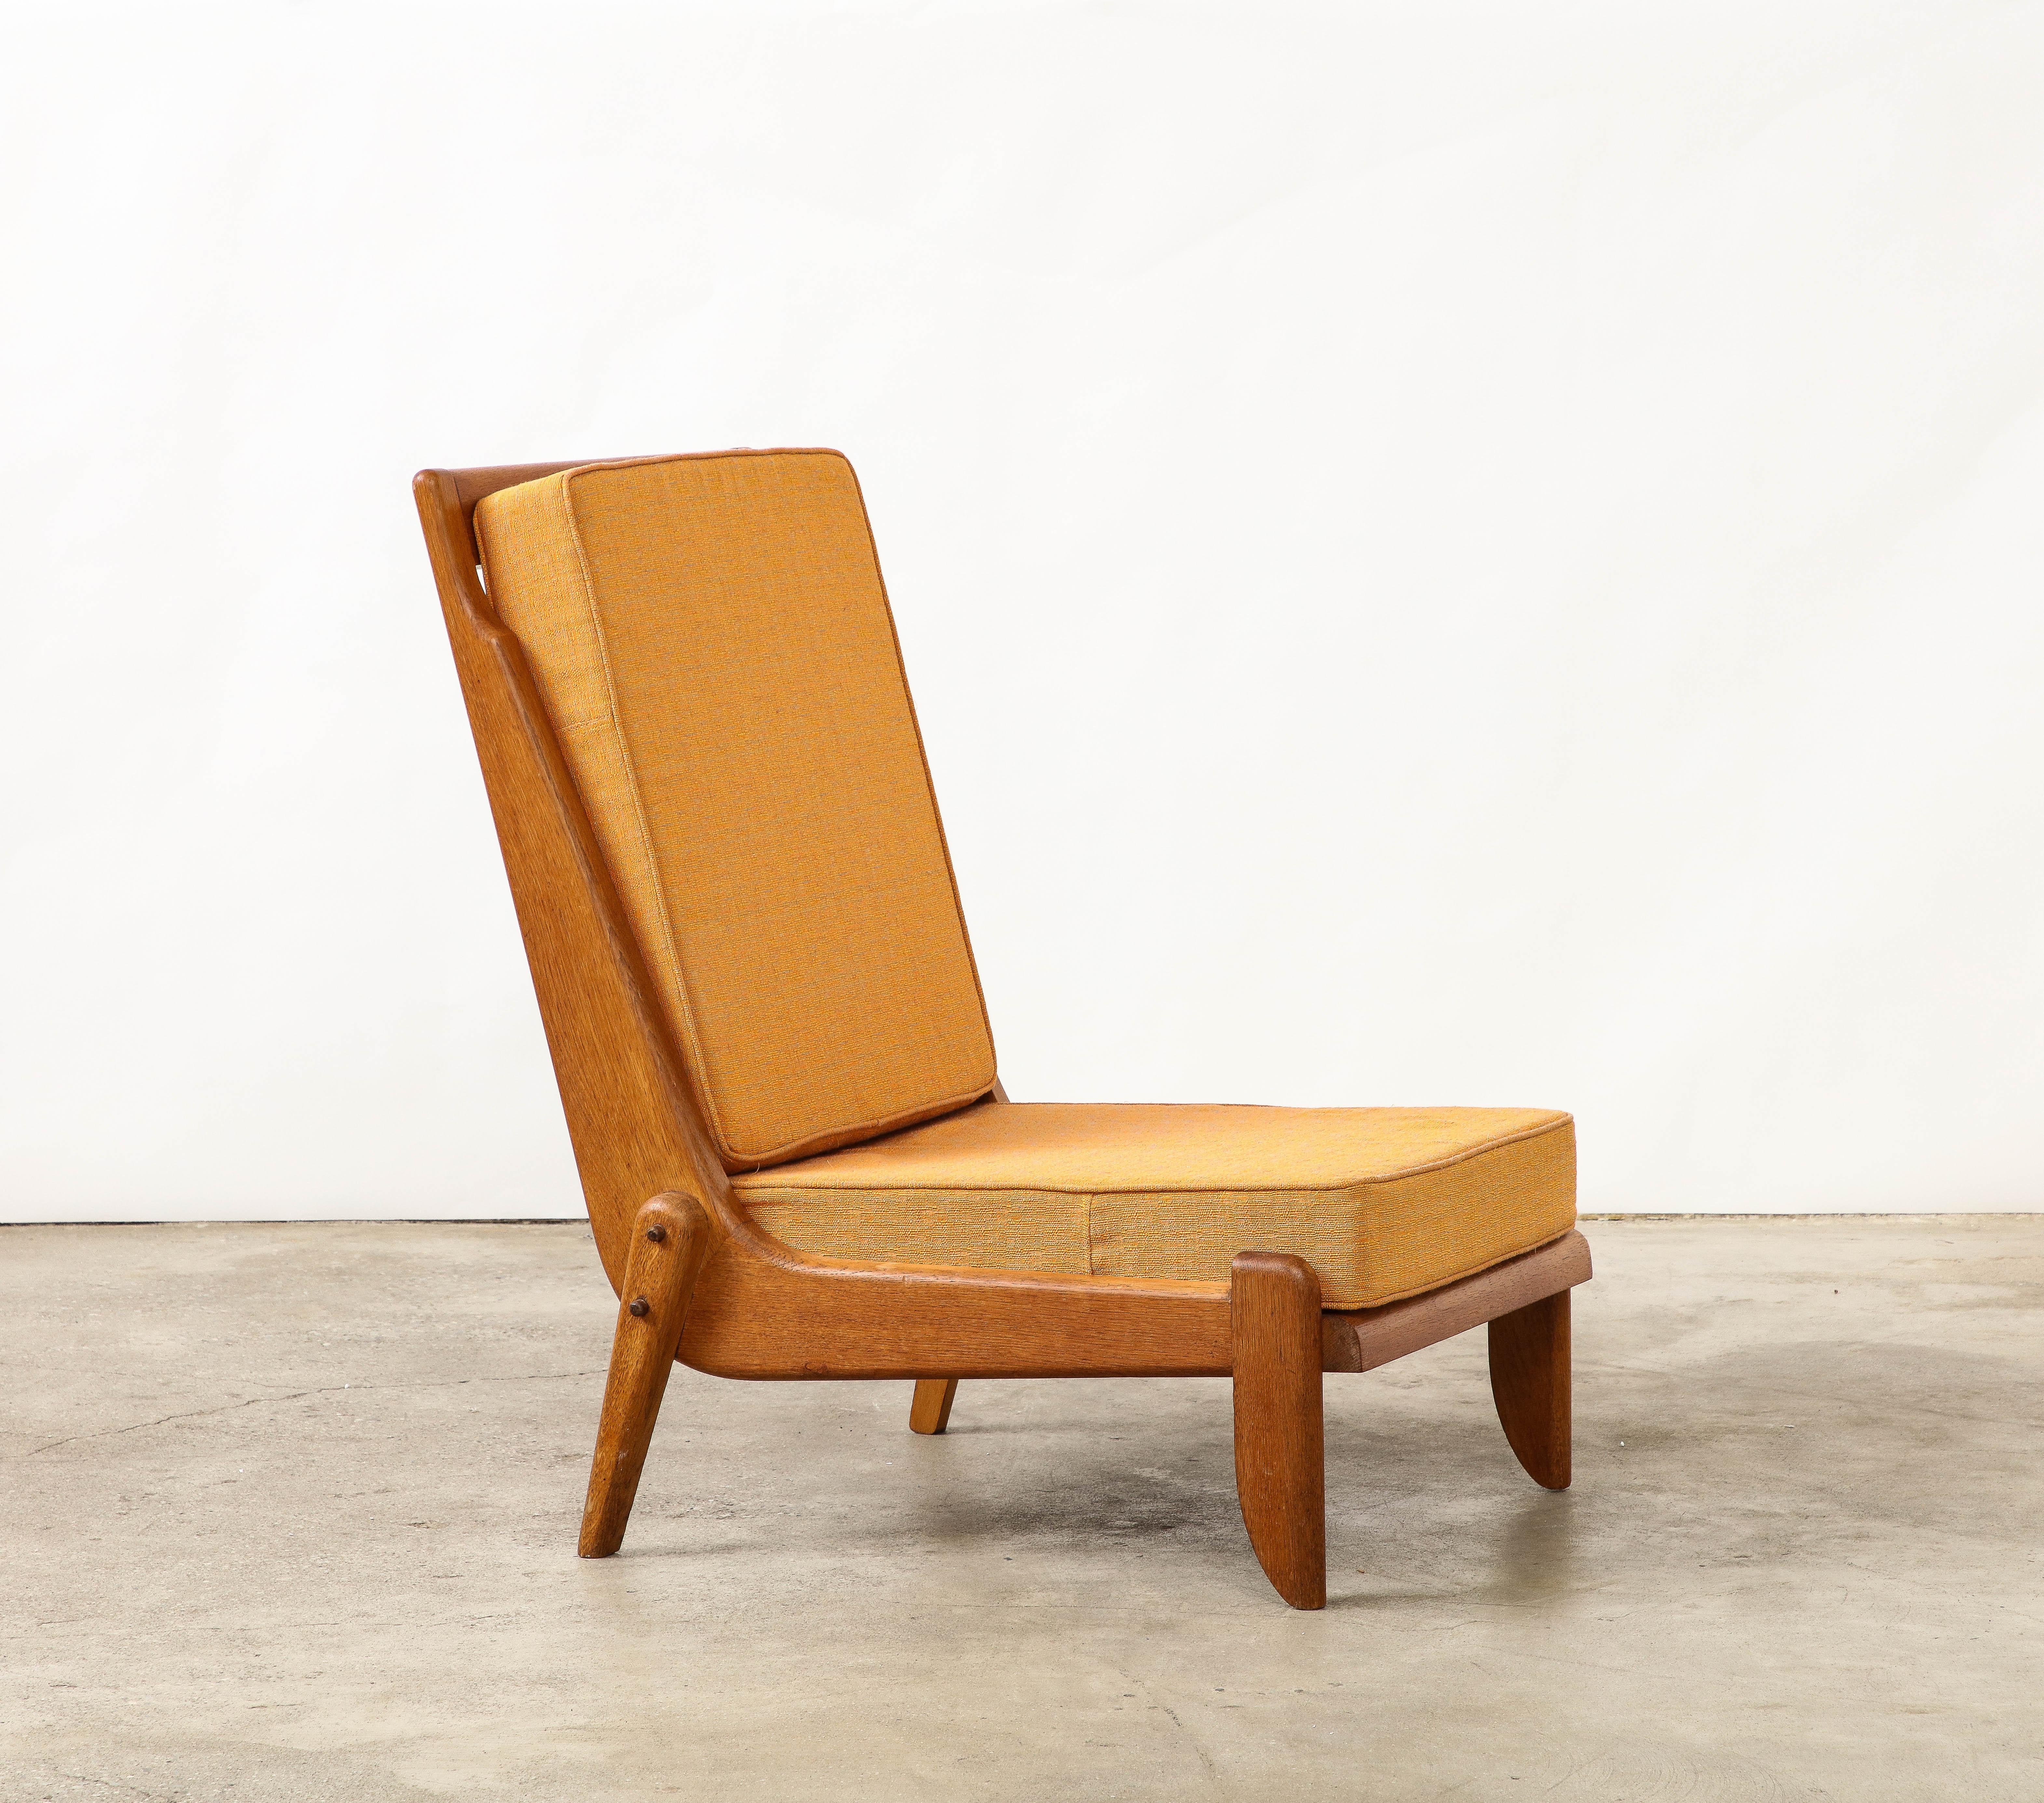 Deux disponibles, vendus individuellement.

Ces chaises de salon basses sont dotées d'un cadre en chêne patiné magnifiquement figuré et de pieds sculptés et assemblés avec soin.